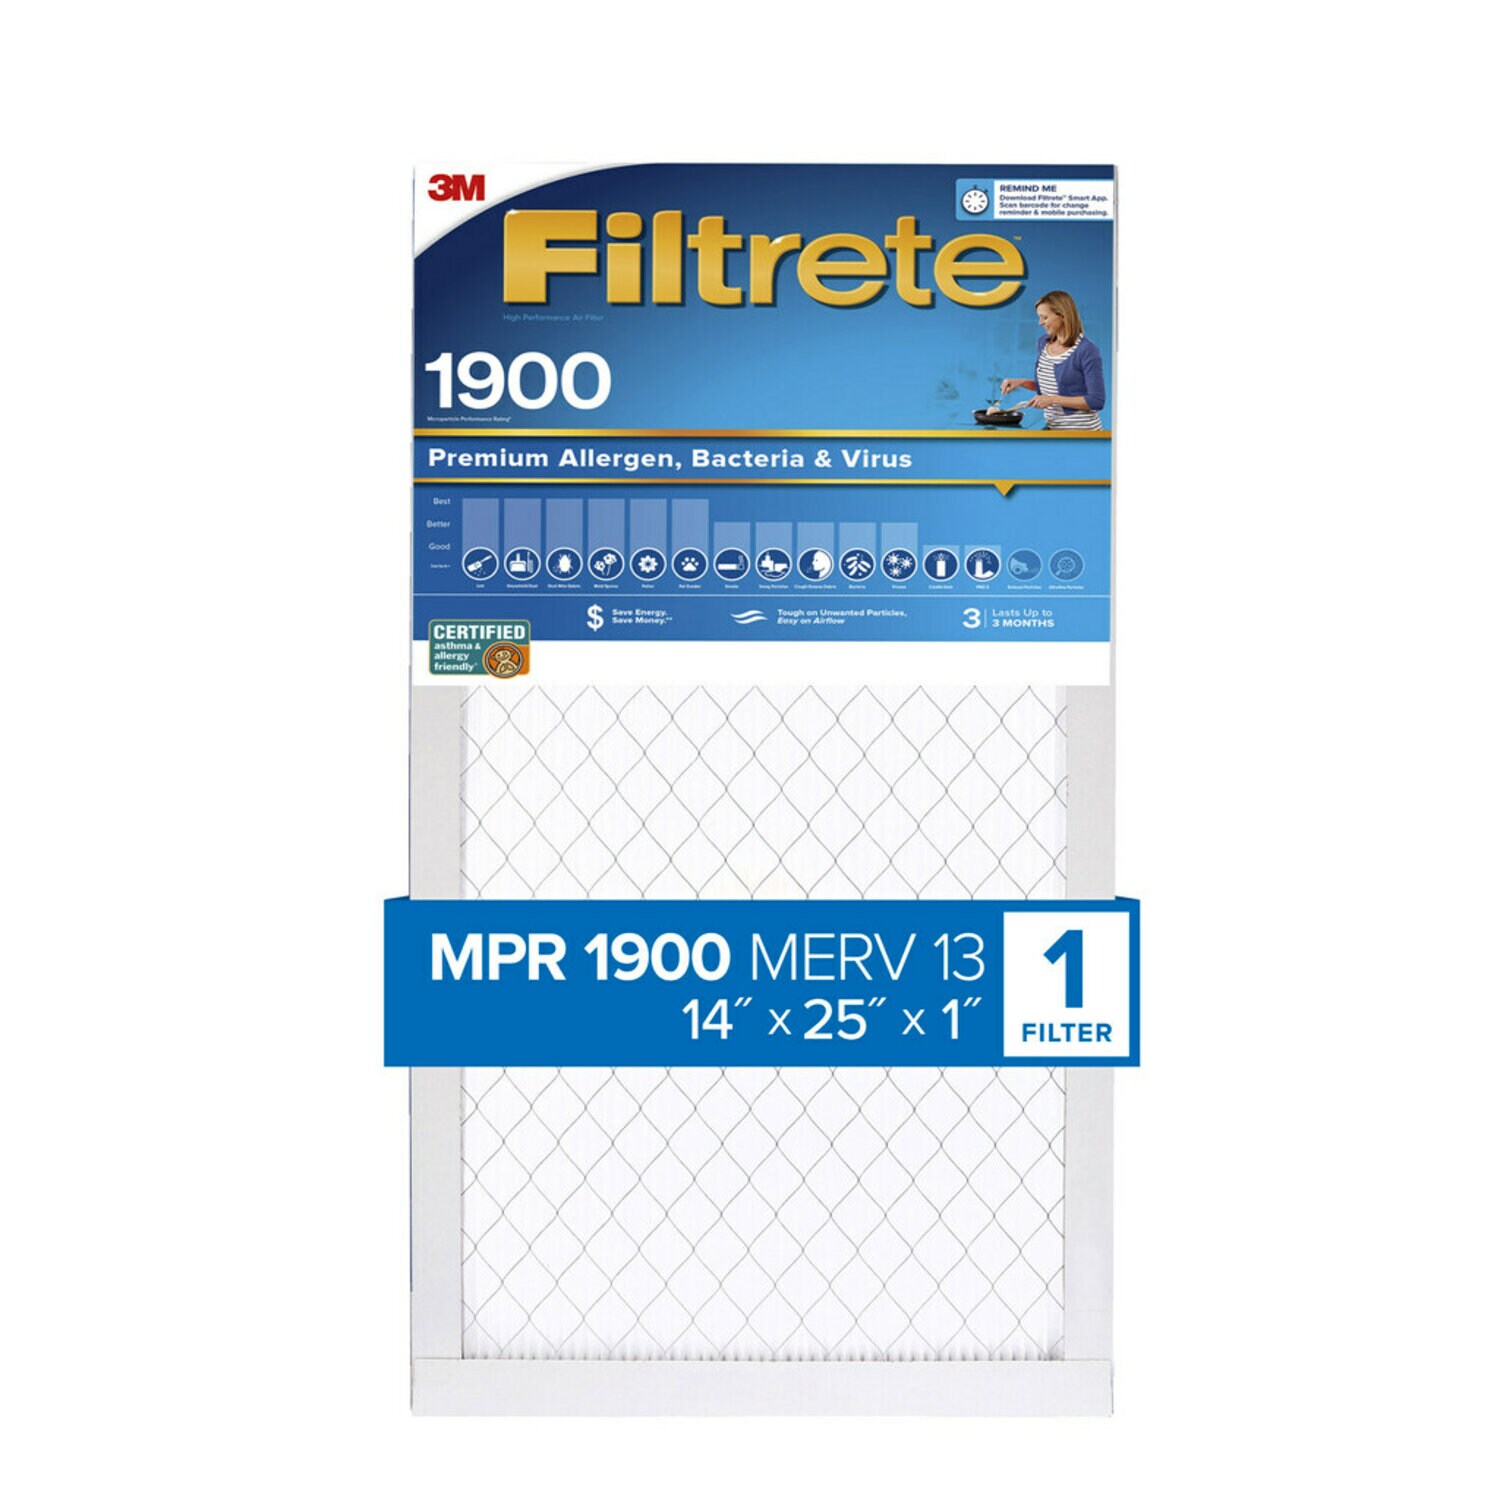 7100268071 - Filtrete High Performance Air Filter 1900 MPR UA04-4, 14 in x 25 in x 1 in (35.5 cm x 63.5 cm x 2.5 cm)